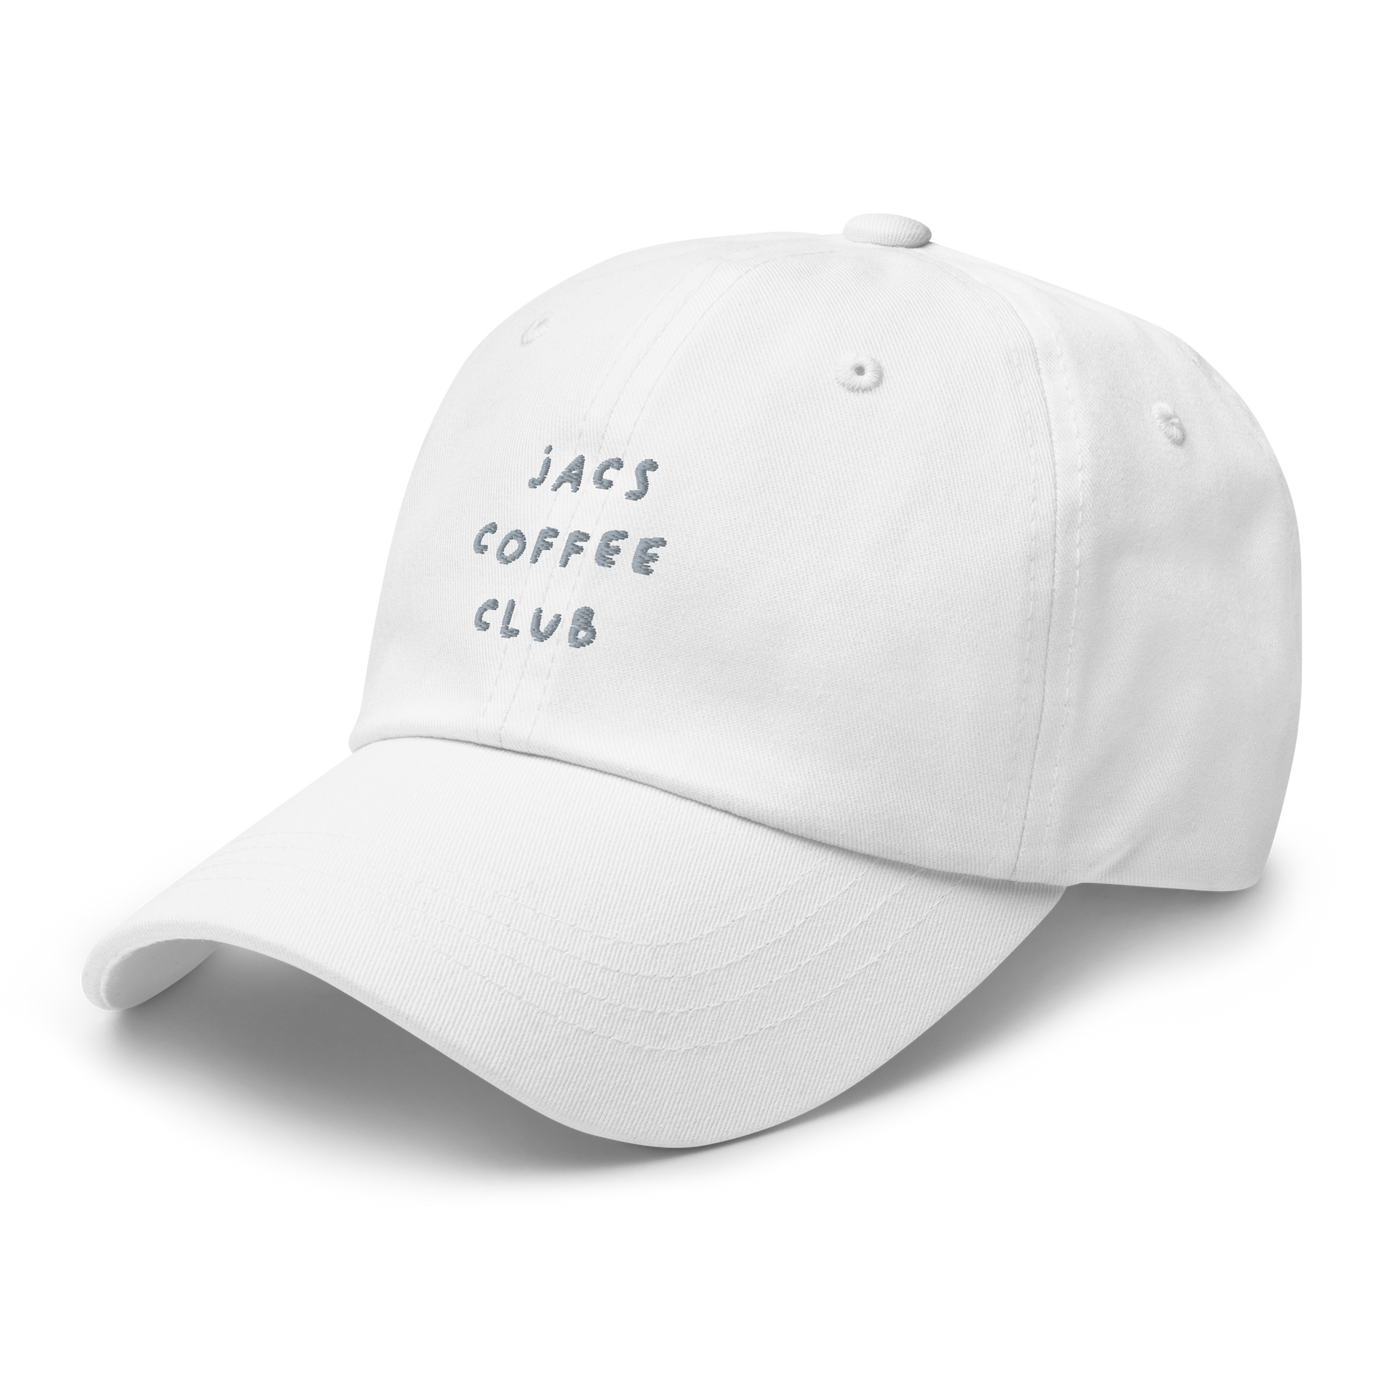 Jacs Coffee Club Dad hat